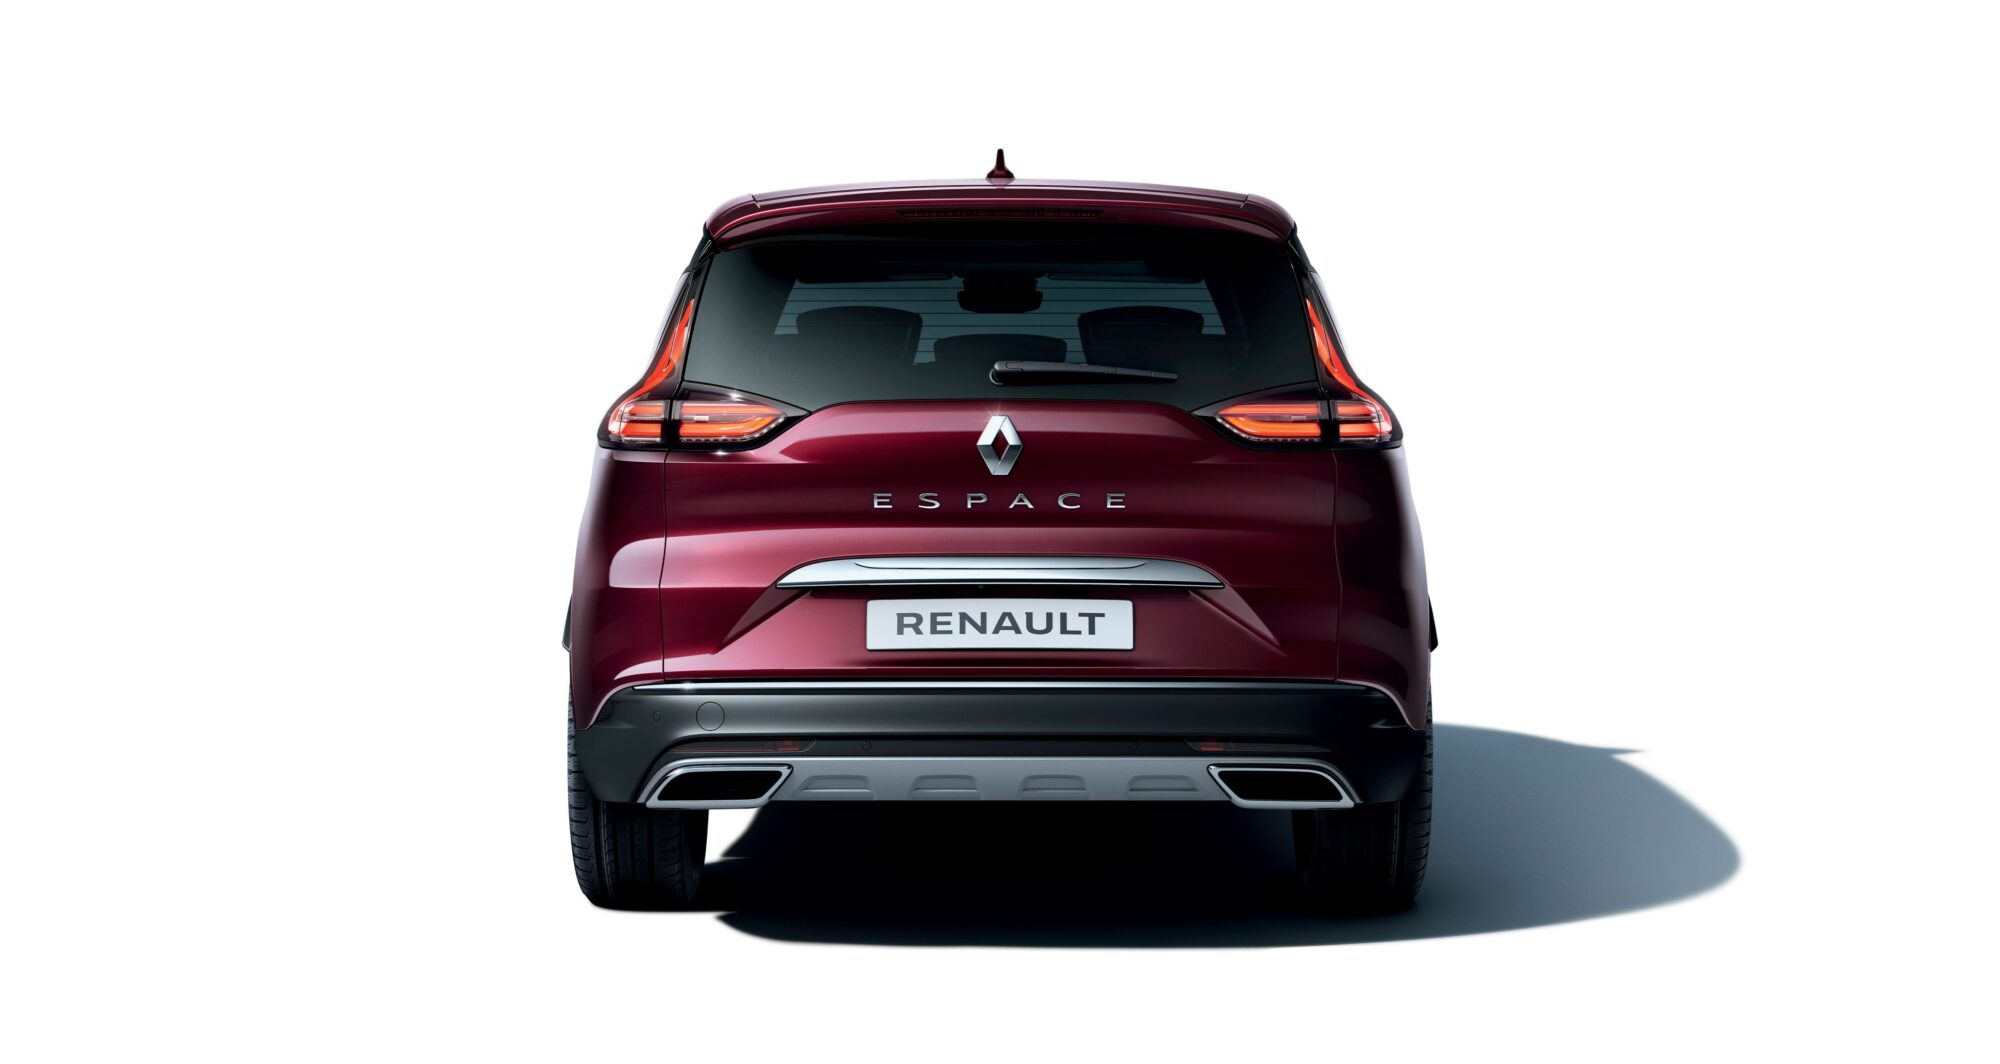 2019 - Nouveau Renault ESPACE Initiale Paris